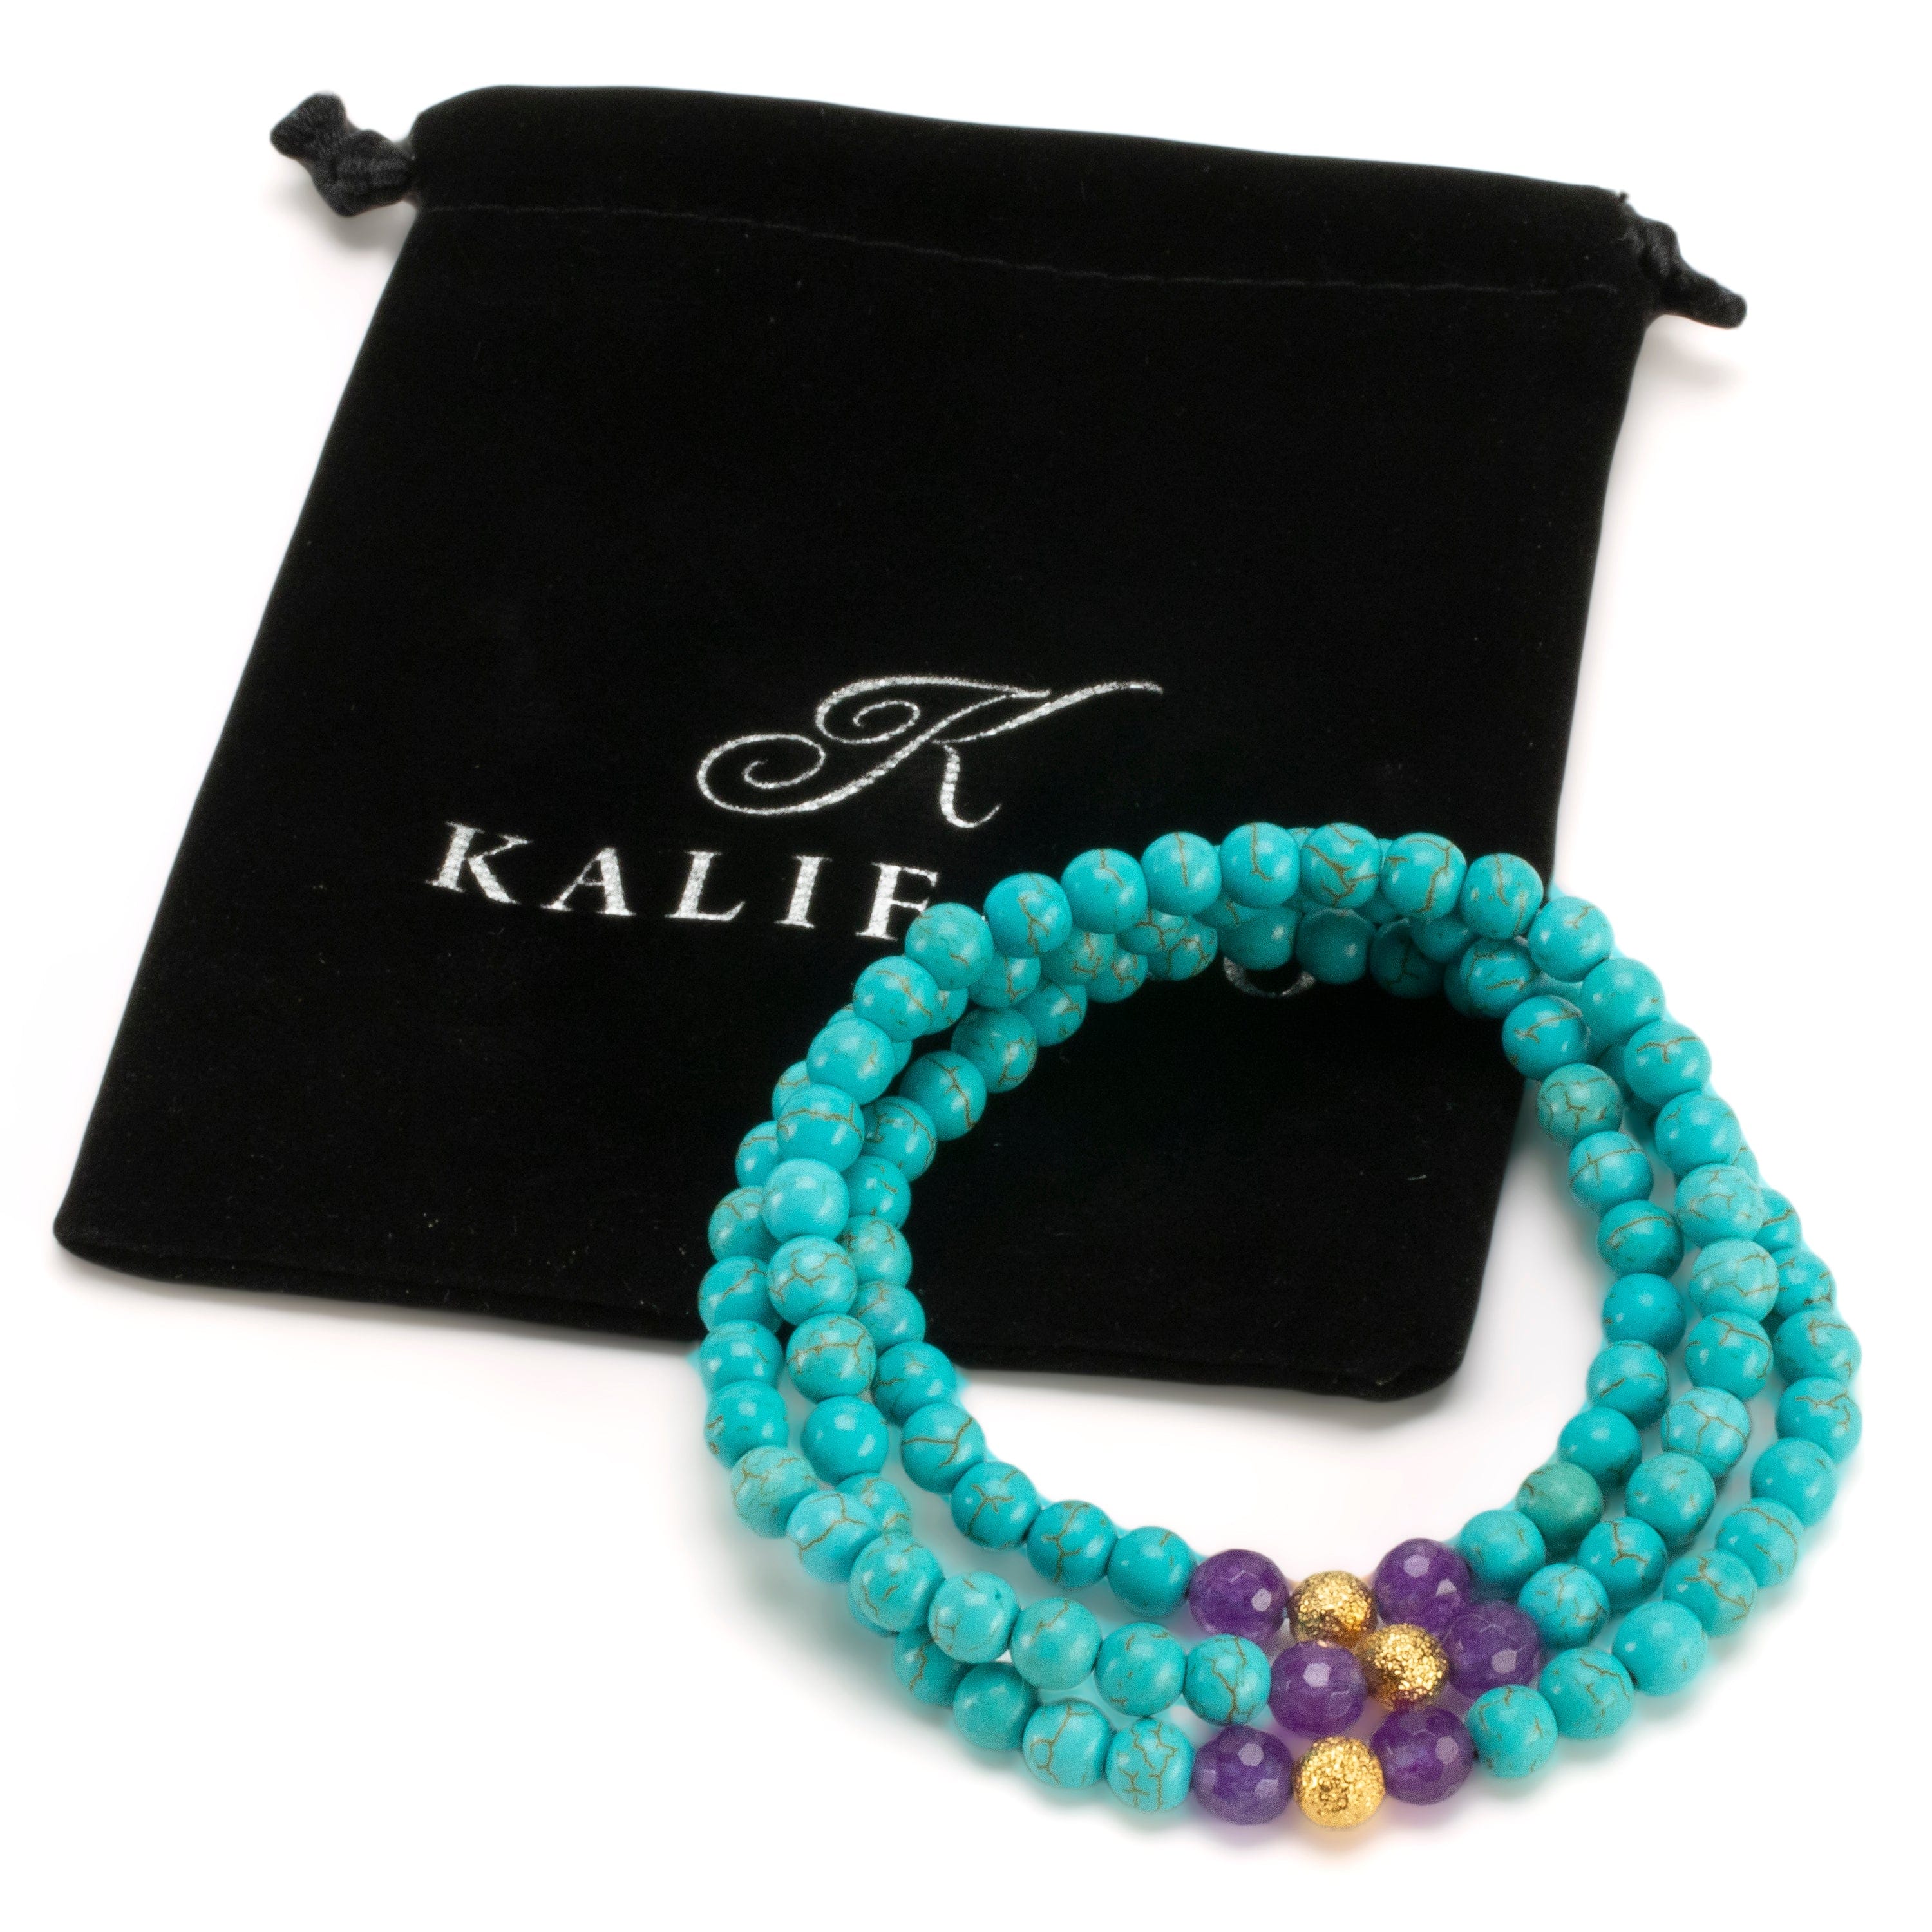 Kalifano Gemstone Bracelets Howlite Turquoise 6mm Beads with Amethyst & Gold Accent Beads Triple Wrap Gemstone Elastic Bracelet WHITE-BGI3-082